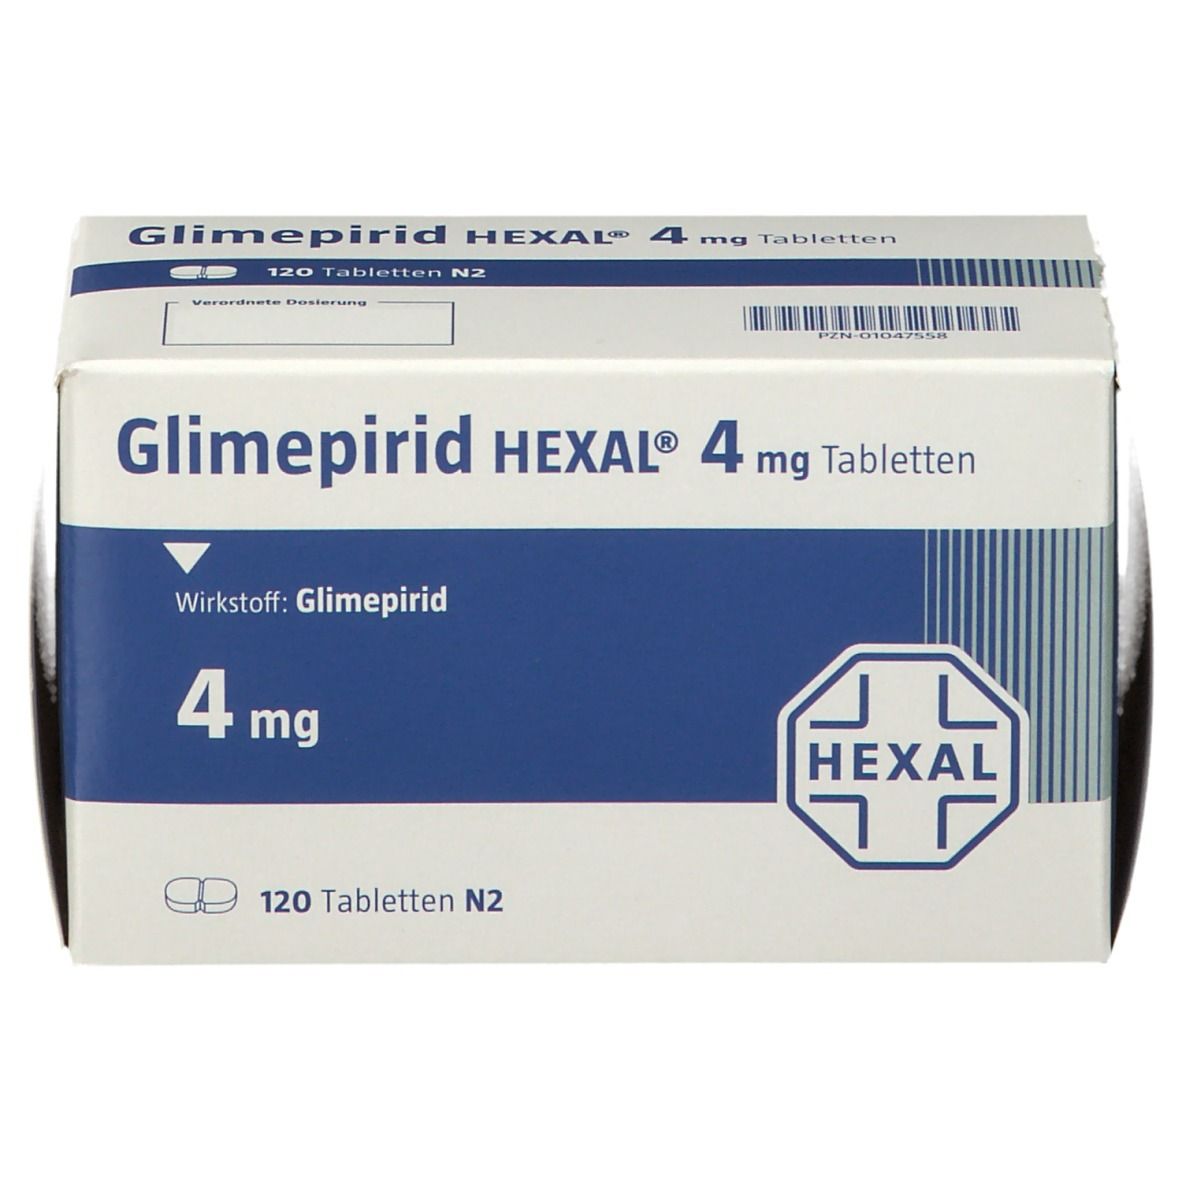 Glimepirid HEXAL® 4 mg